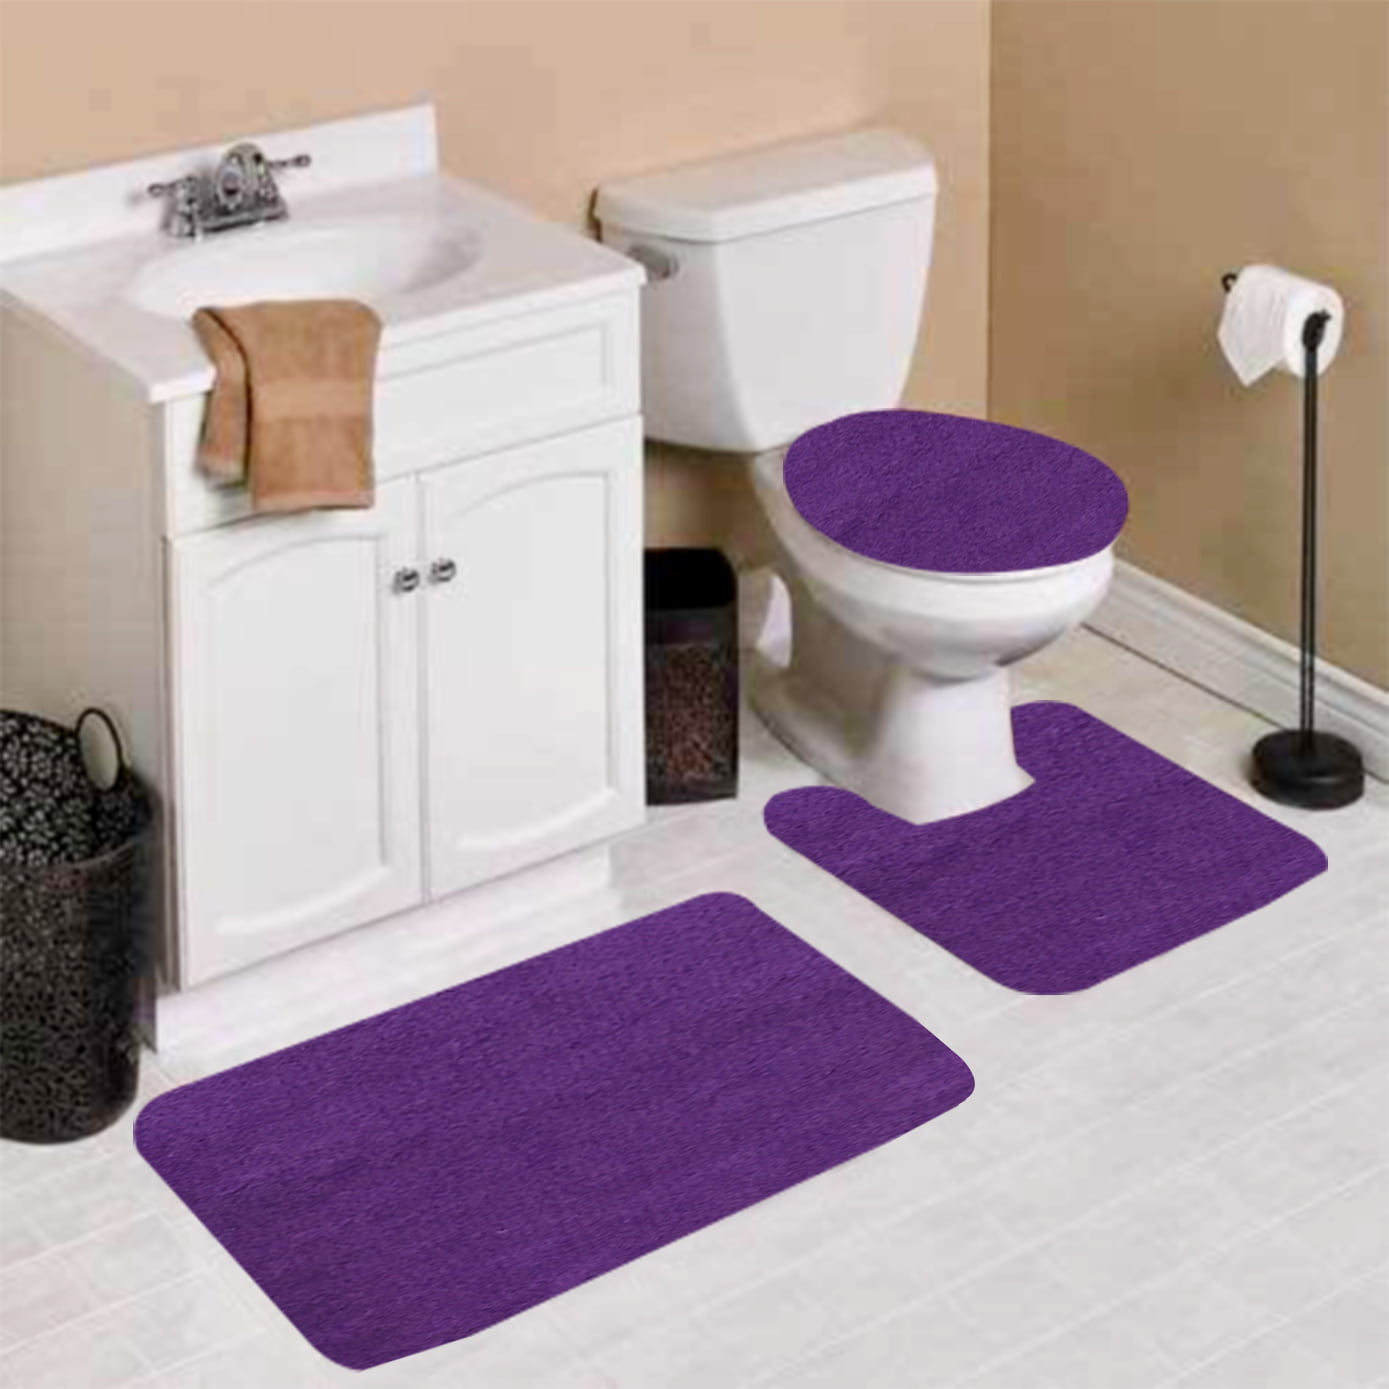 Details about   3PCS Bathroom Pedestal Mat Kit Contour Rug Bath Mat Toilet Lid Cover Practical